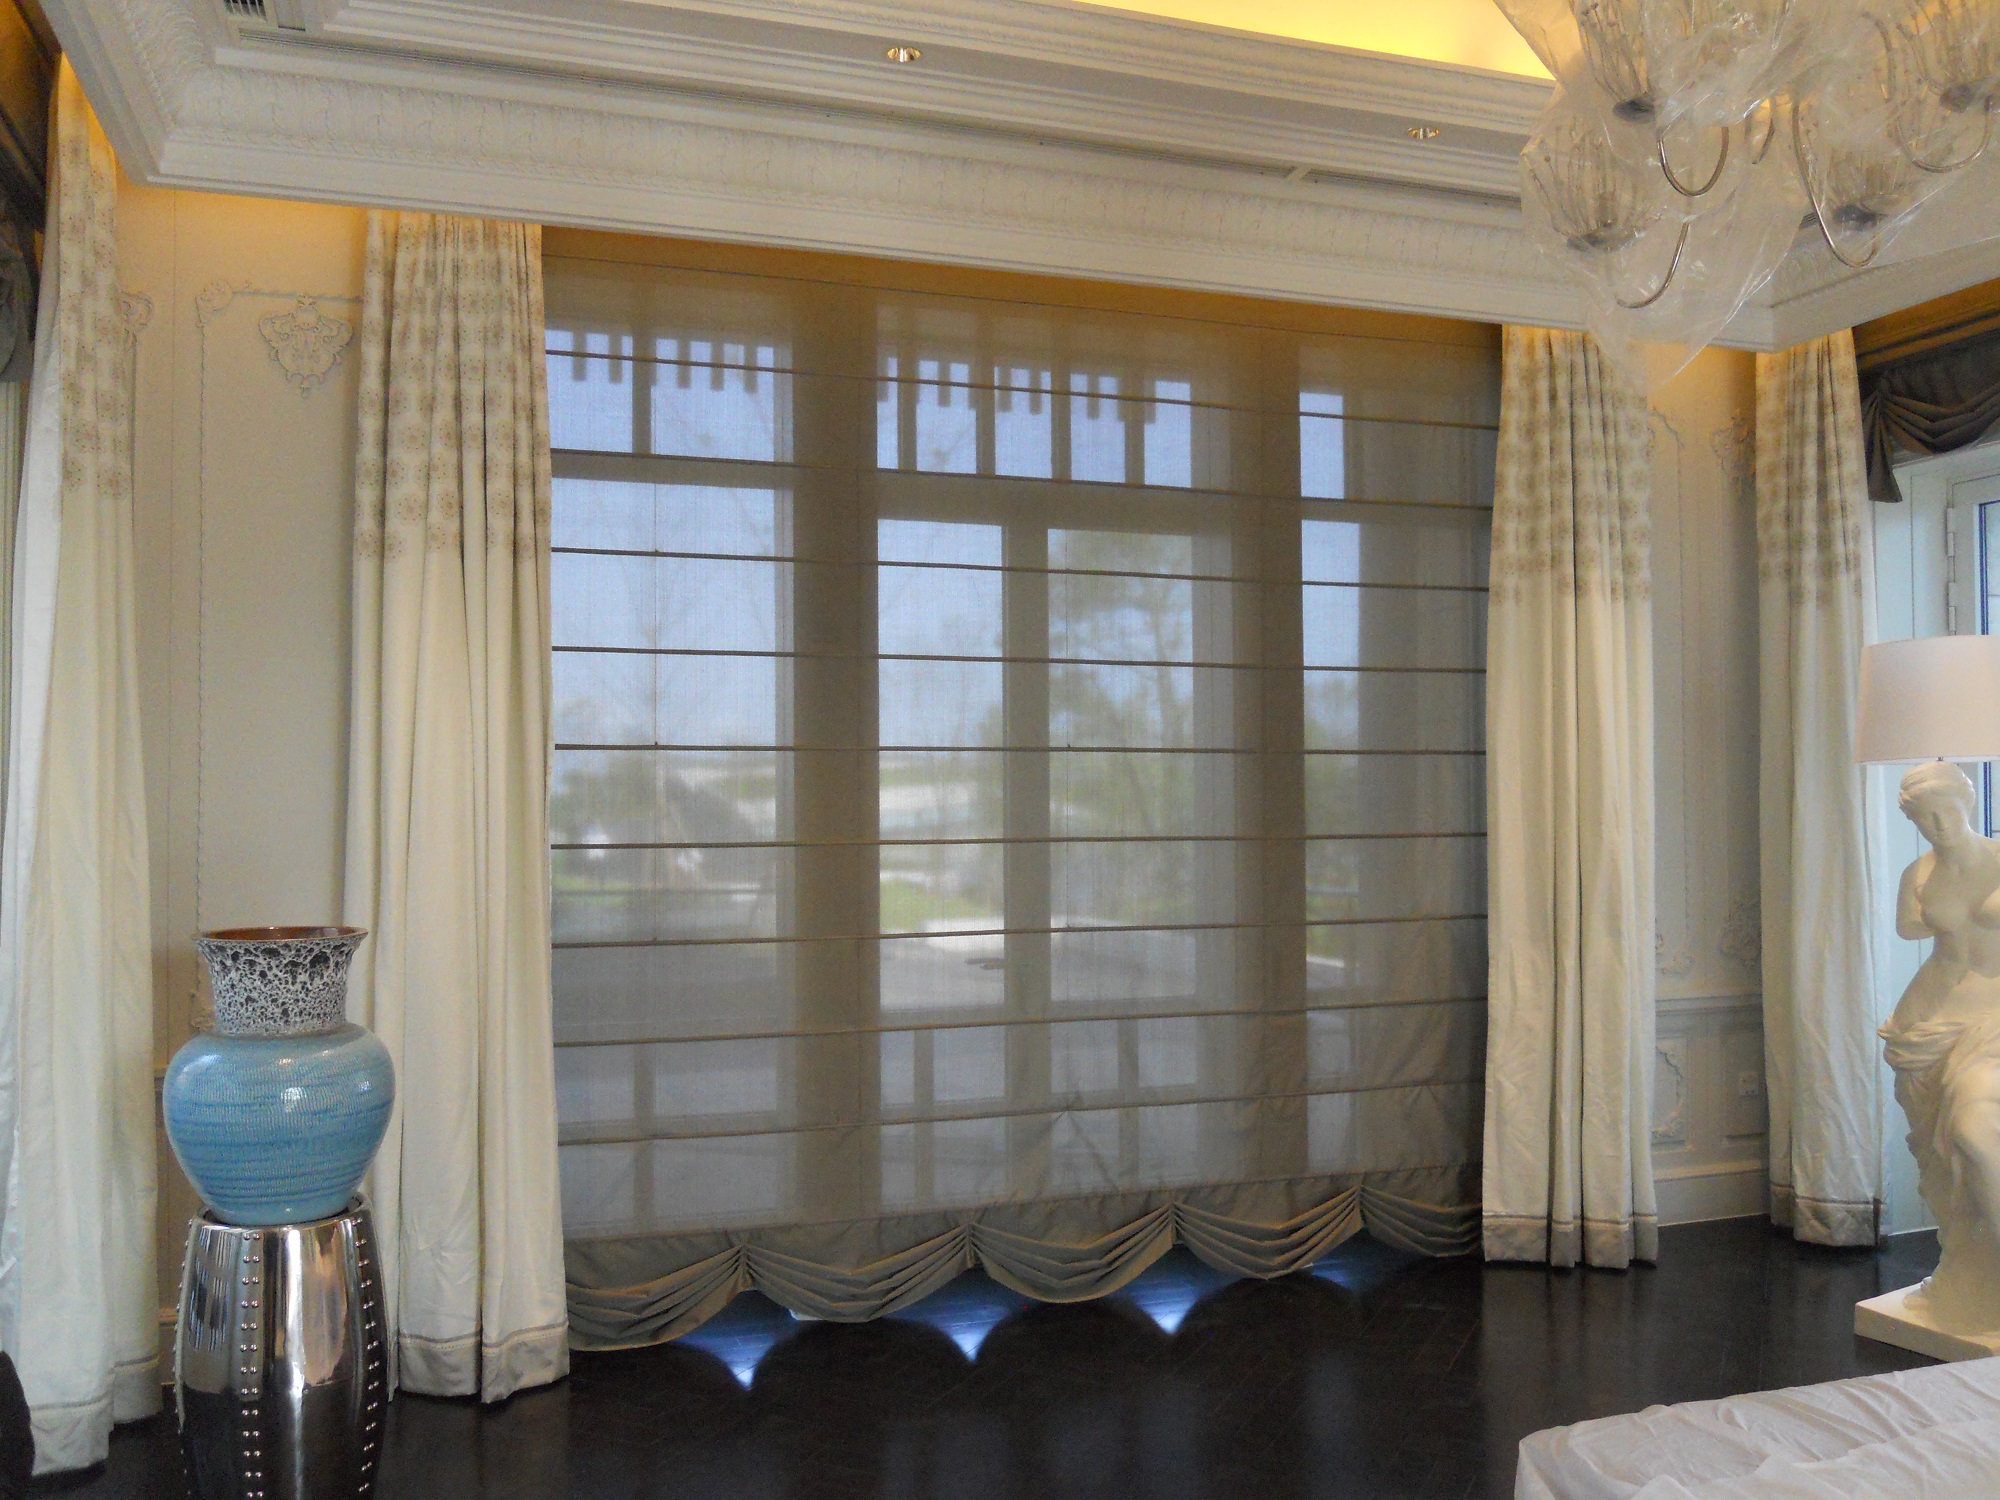 伊莎莱-现代轻奢客厅窗帘效果图-客厅窗帘图片